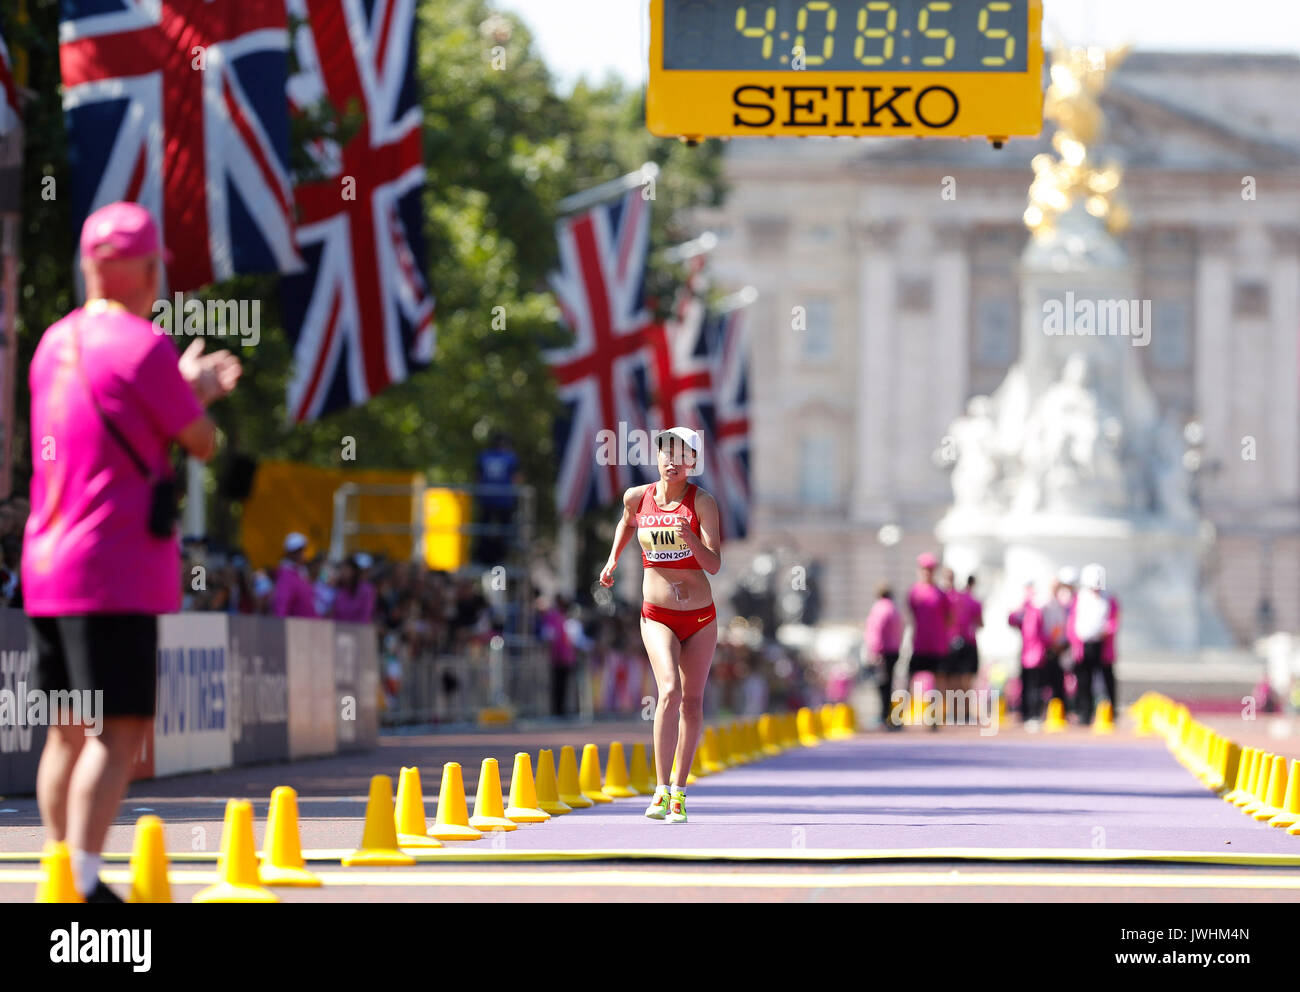 Londra, Regno Unito. 13 Ago, 2017. Yin Hang della Cina compete durante la donna 50km di corsa a piedi durante il giorno 10 presso la IAAF Campionati del Mondo 2017 a Londra, in Gran Bretagna il 13 agosto, 2017. Credito: Han Yan/Xinhua/Alamy Live News Foto Stock